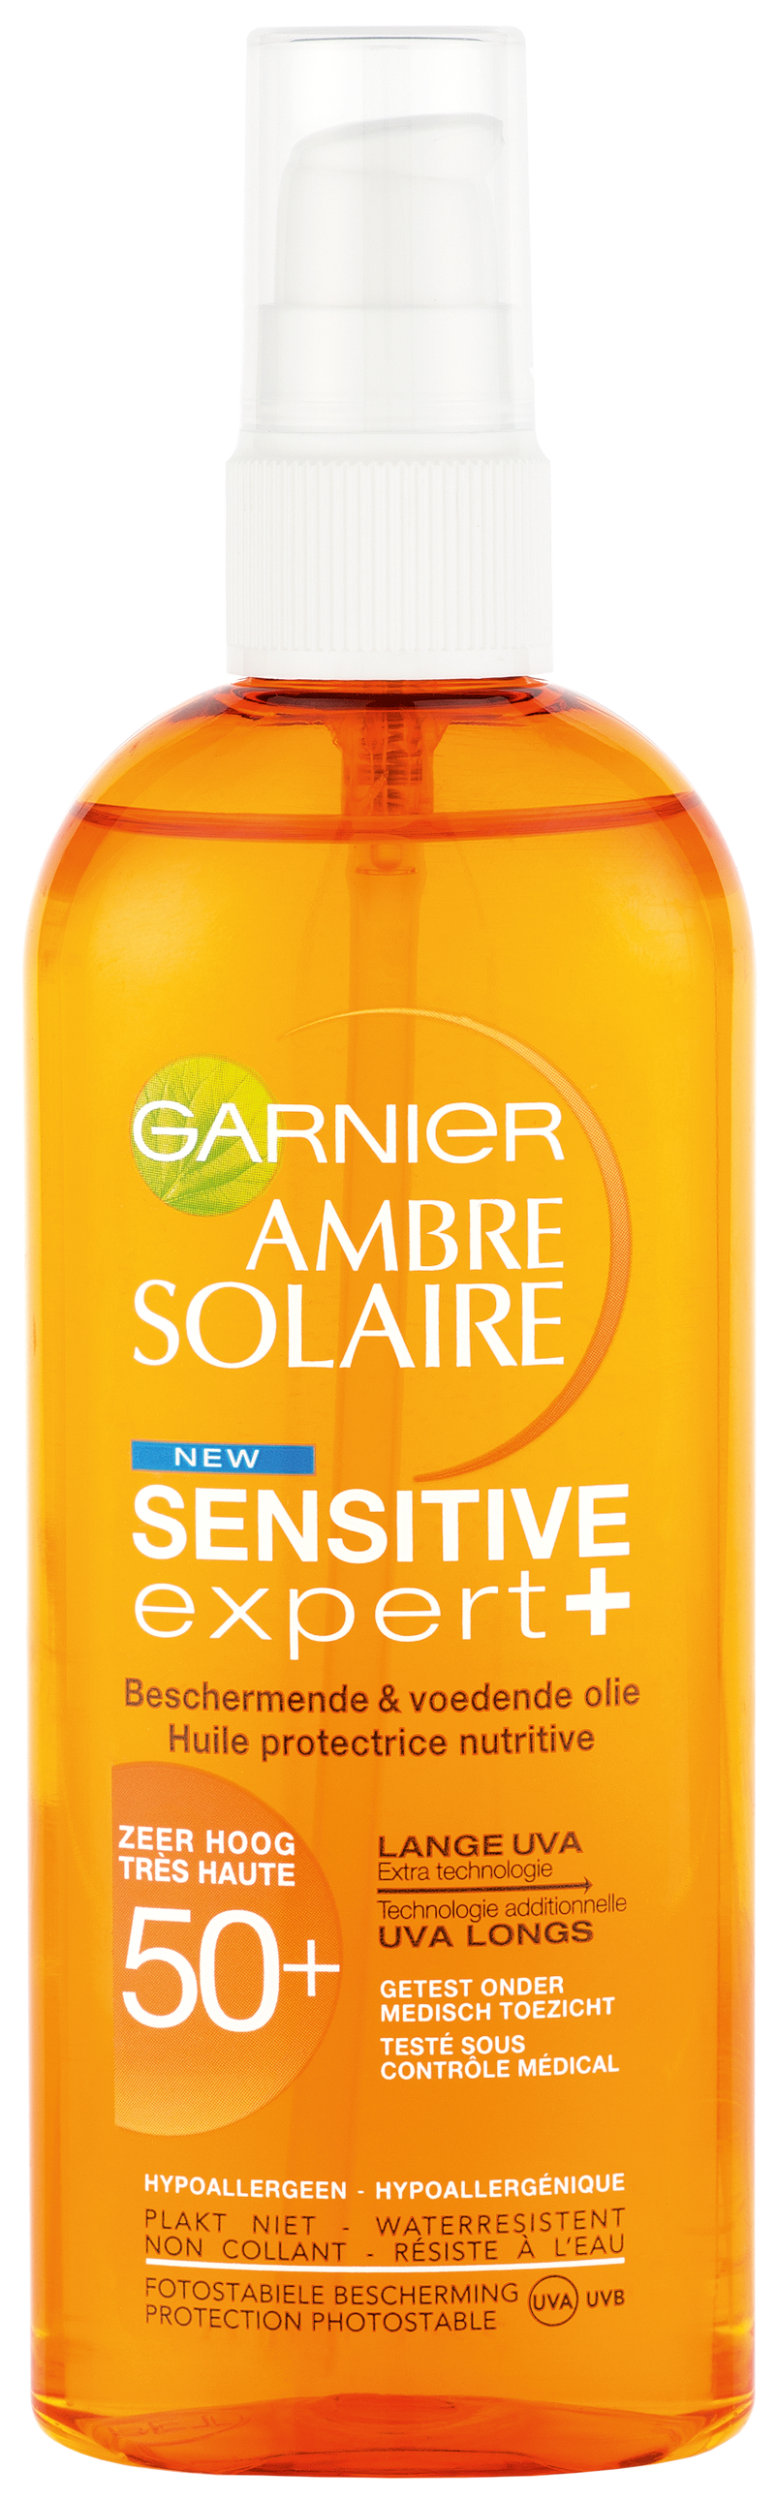 L'Oreal garnier sensitive_expert_olie_spf50